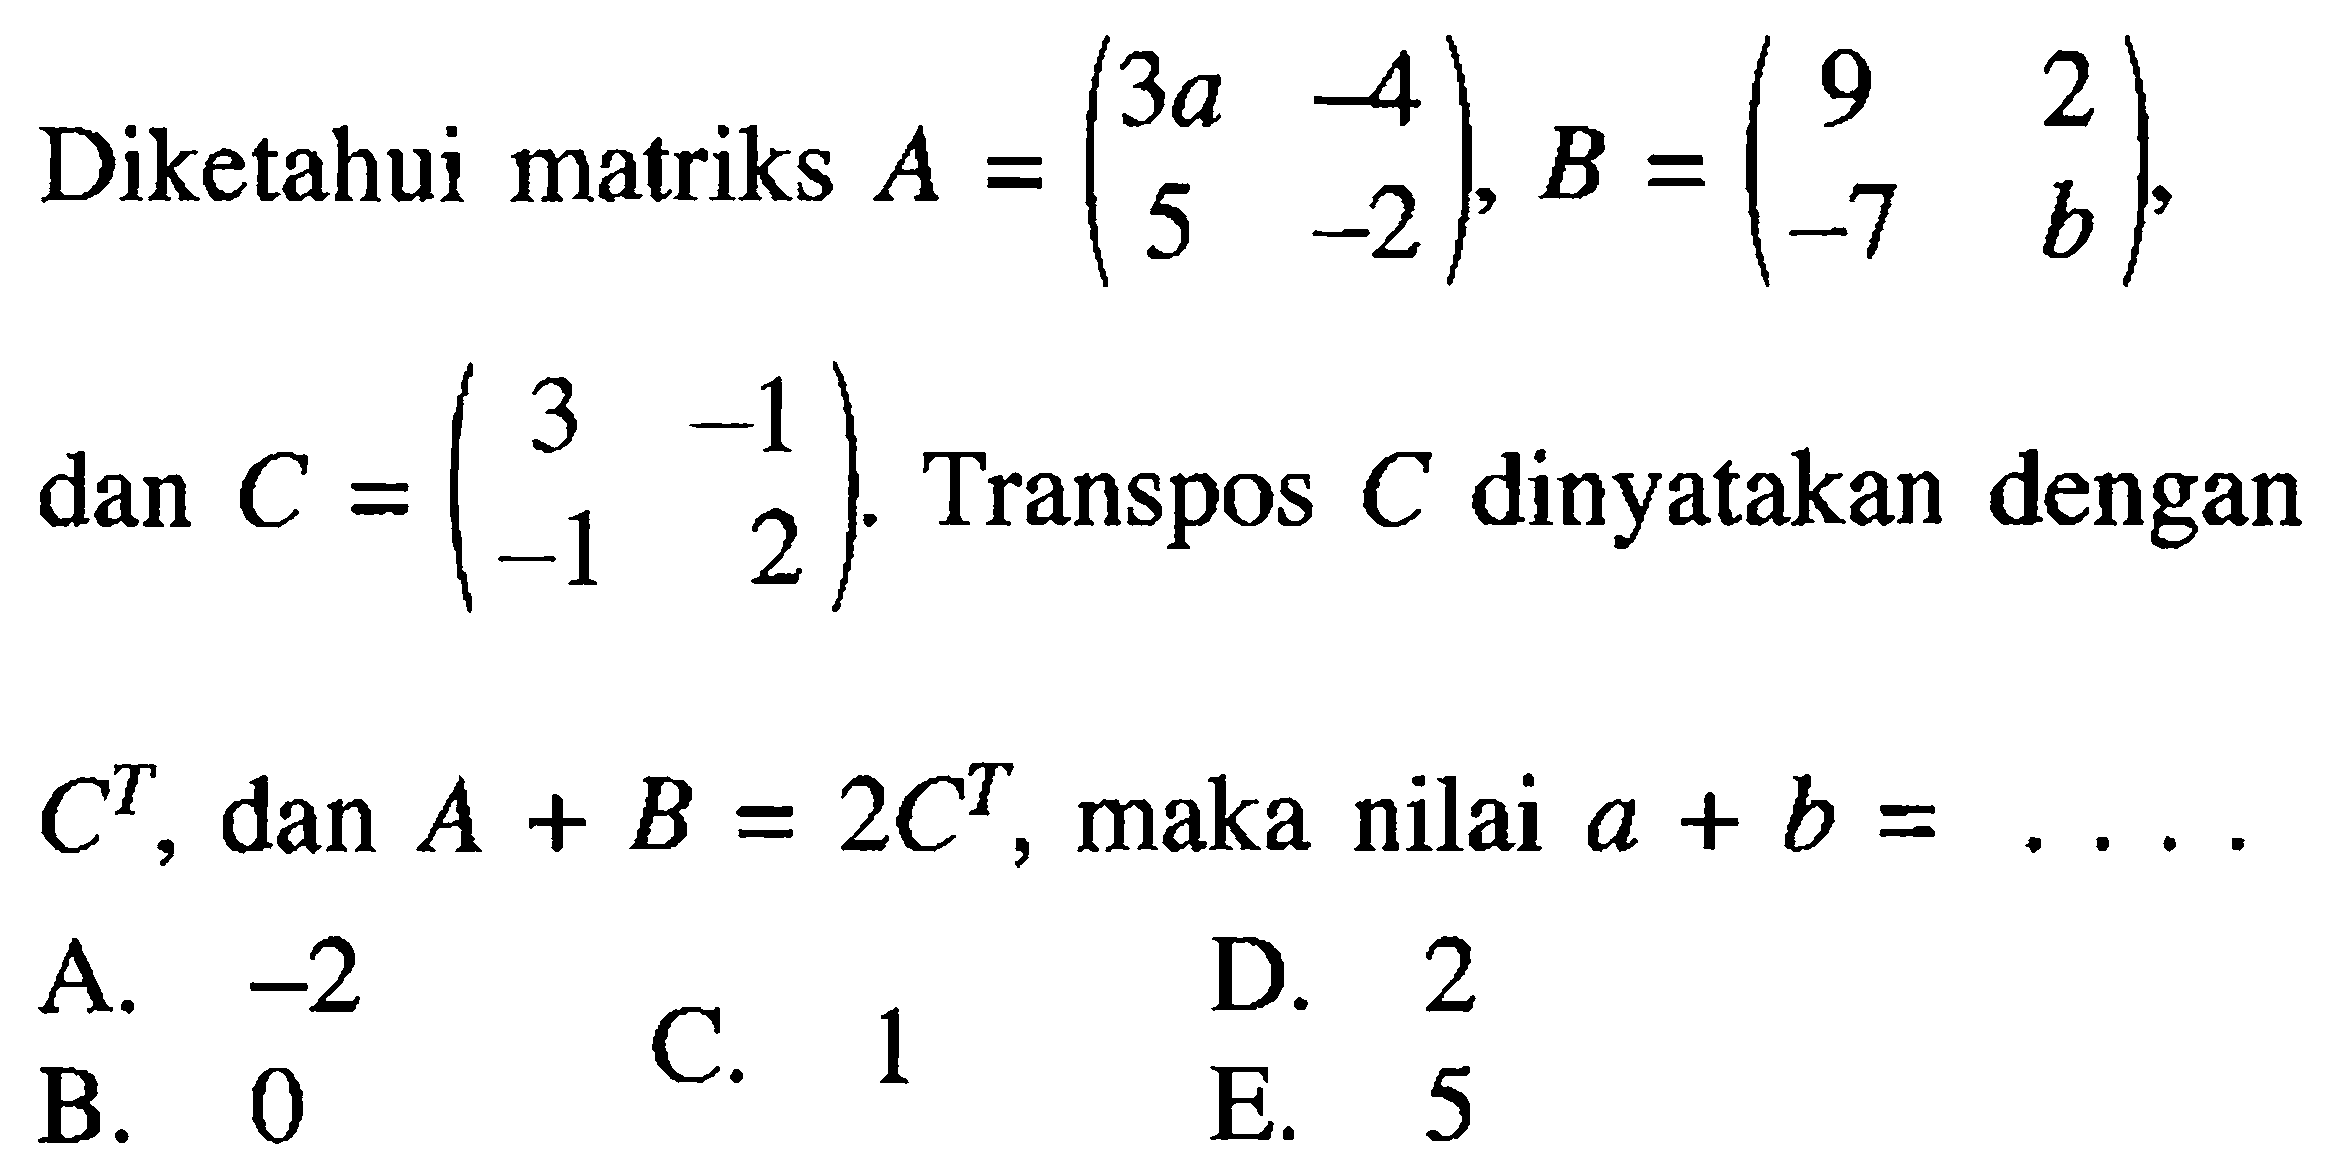 Diketahui matriks A =(3a -4 5 -2), B = (9 2 -7 b), dan c=(3 -1 1 -2). Transpose C dinyatakan dengan C^T dan A + B = 2C^T maka nilai a + b =